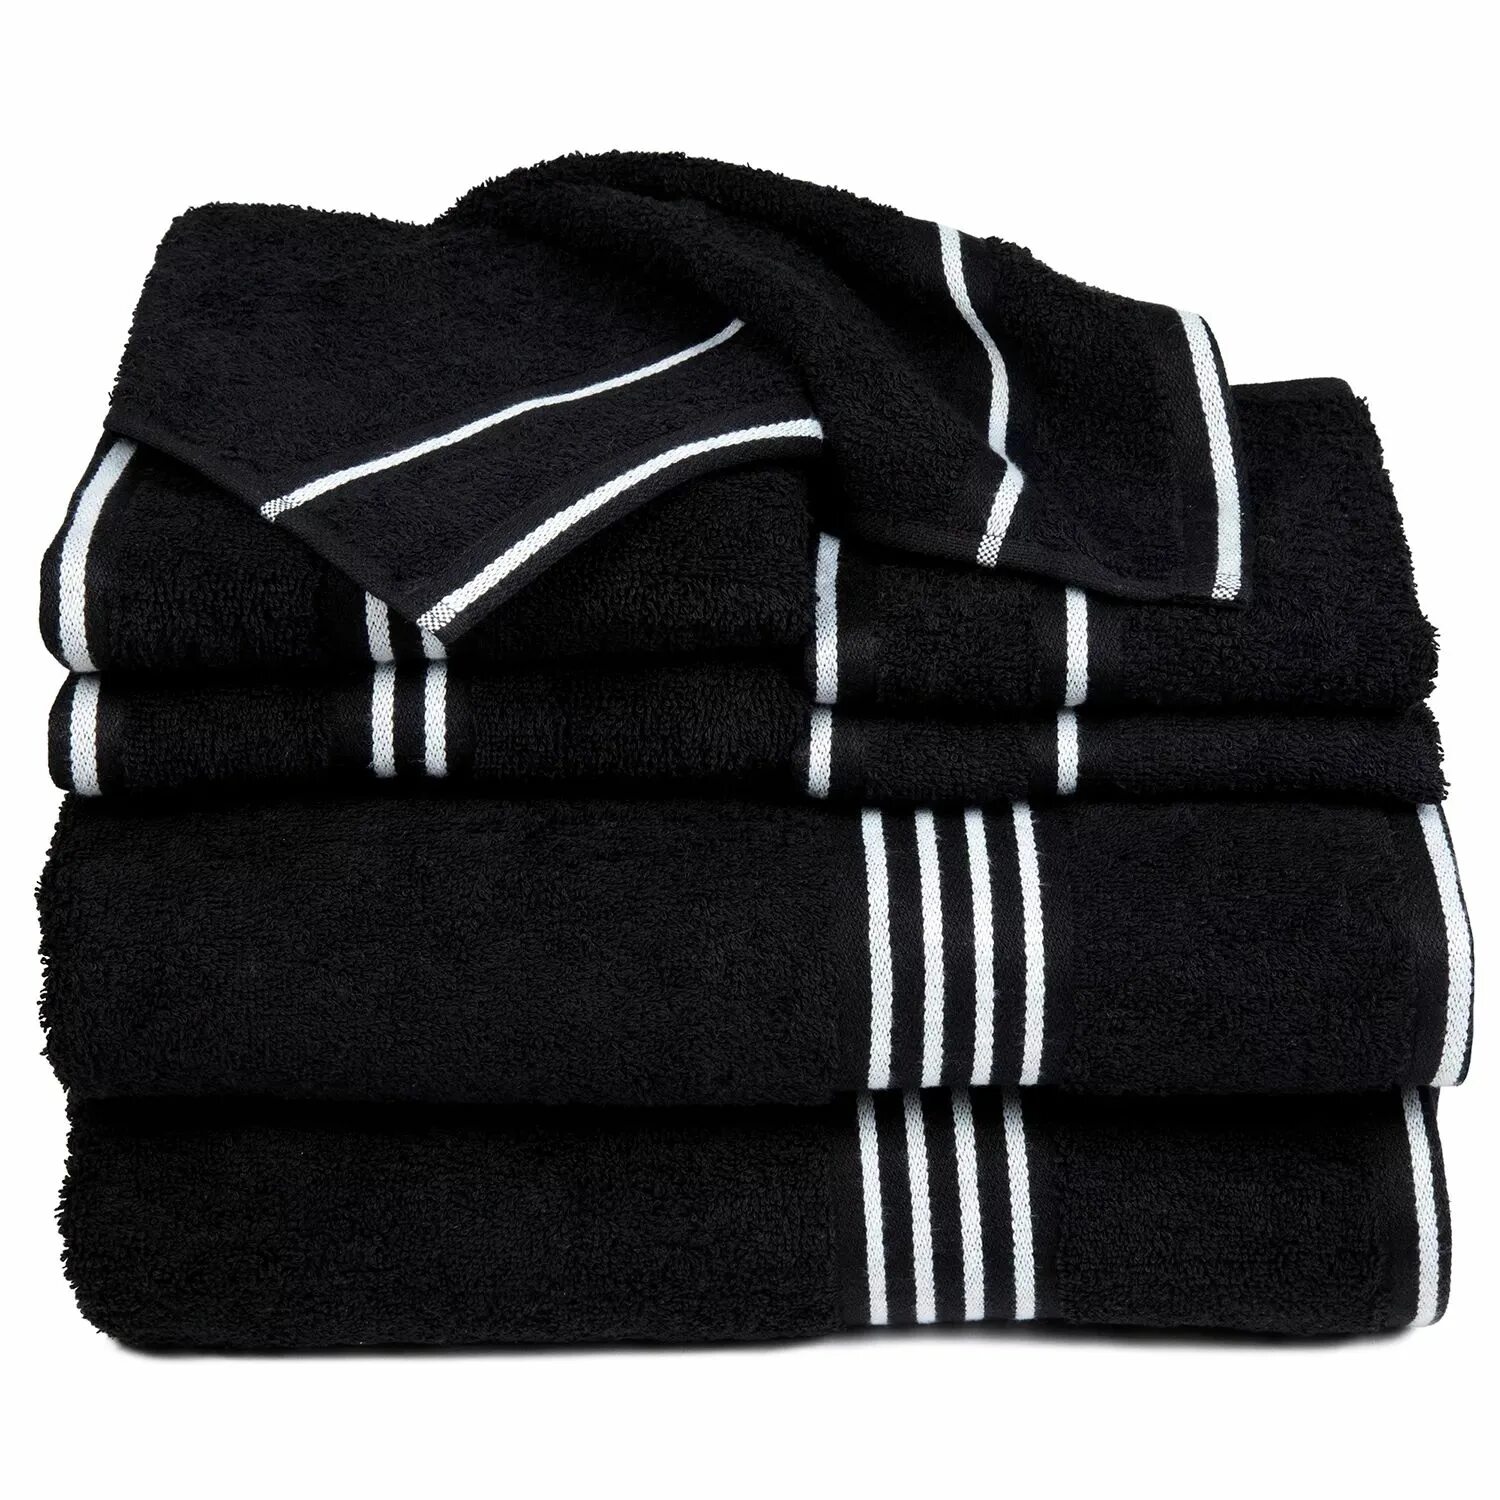 Черные полотенца для ванной. Черное полотенце. Набор черных полотенец. Темные полотенца. Полотенца черного цвета.